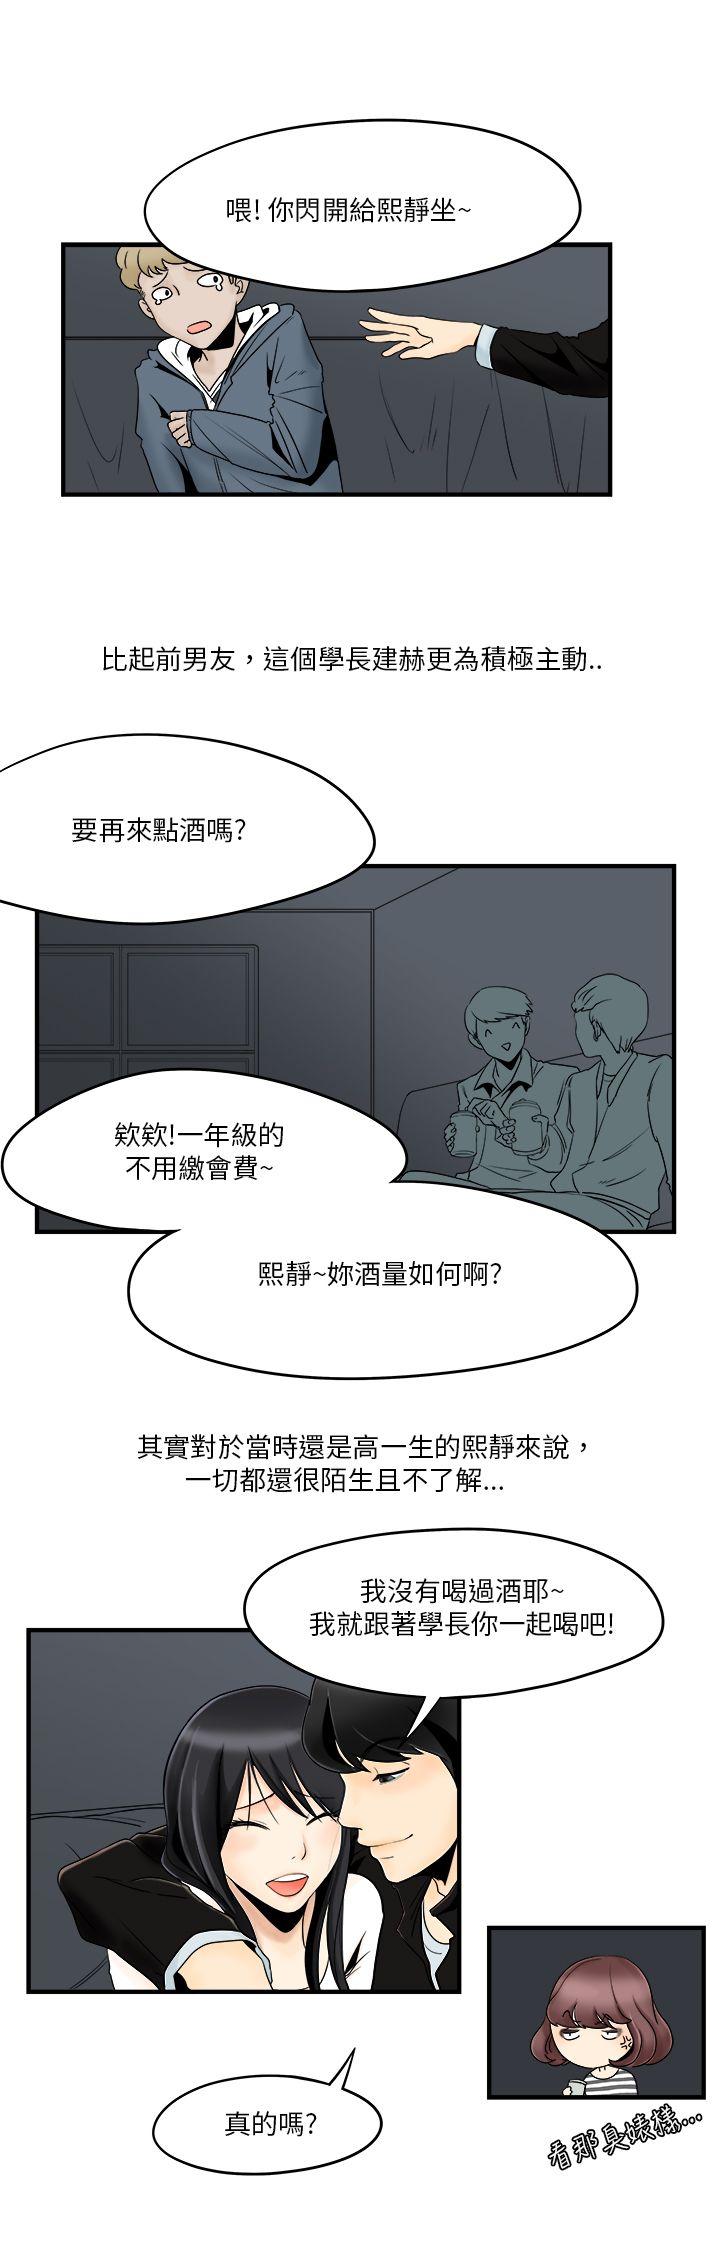 韩国污漫画 男人馴獸師 第6话 1